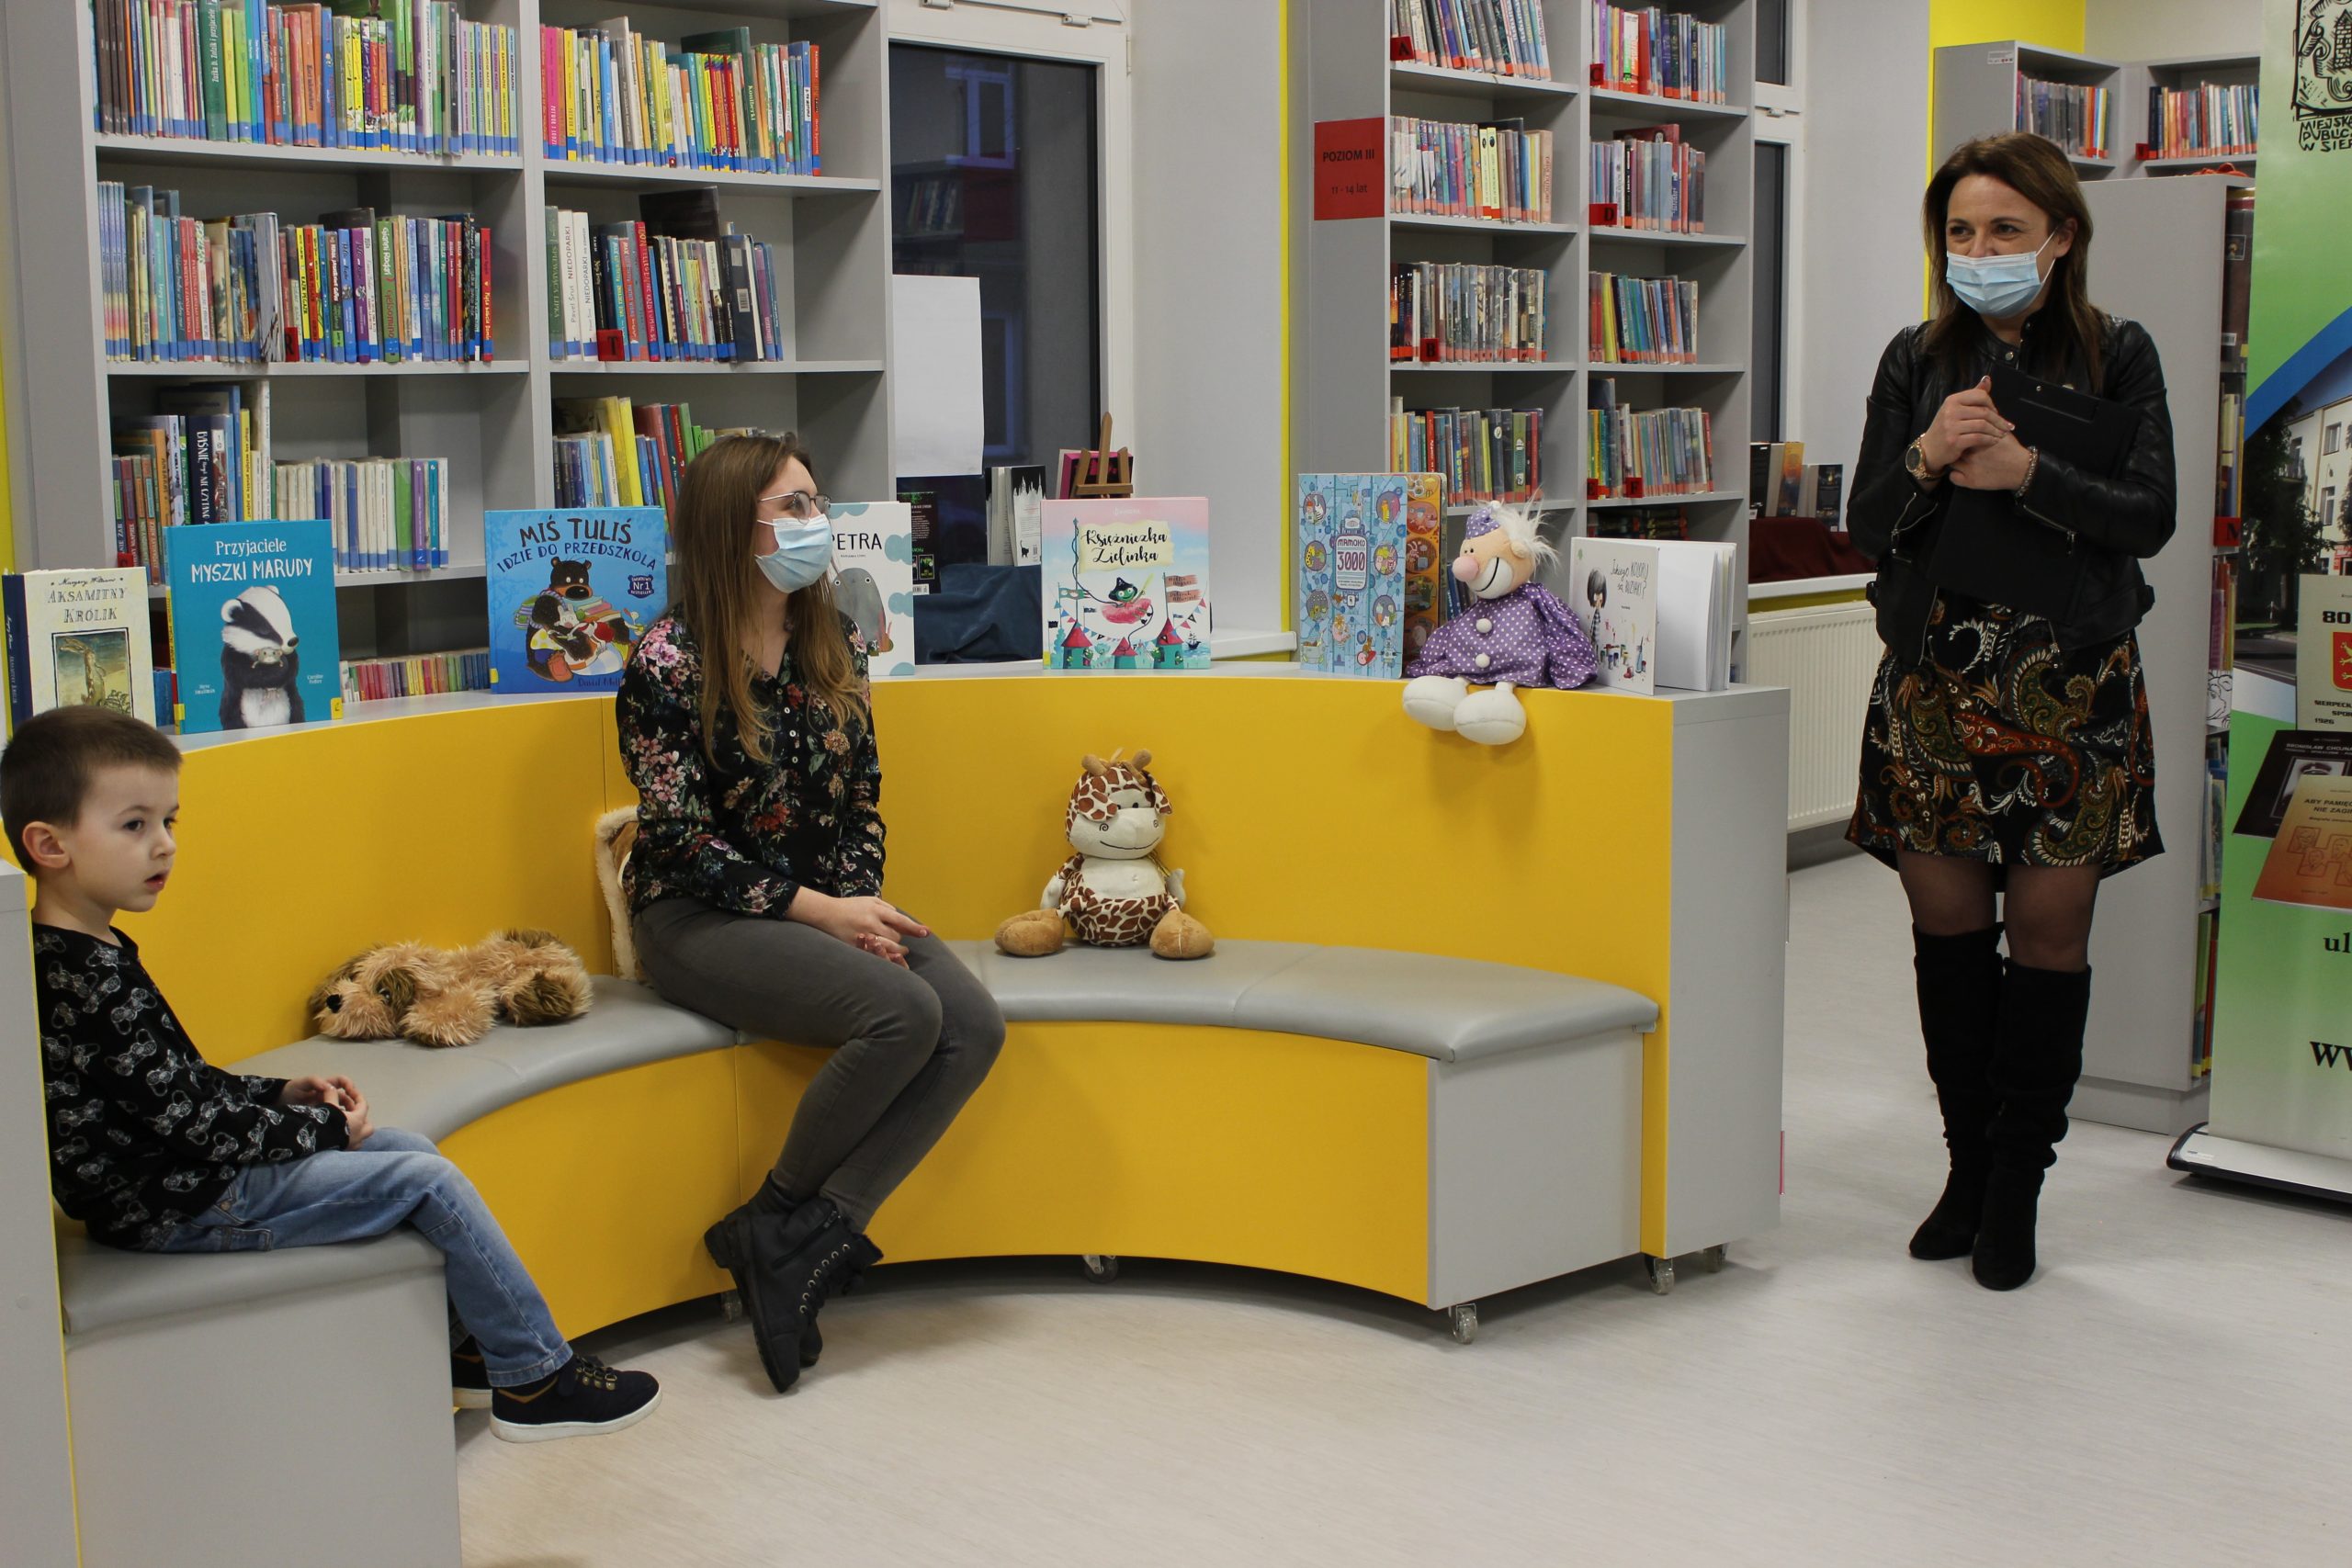 Na pierwszym planie Pani dyrektor Miejskiej Biblioteki Publicznej w Sierpcu przemawia. Na żółtych siedziskach dla dzieci siedzi młoda kobieta i mały chłopiec. W tle szare regały z książkami.